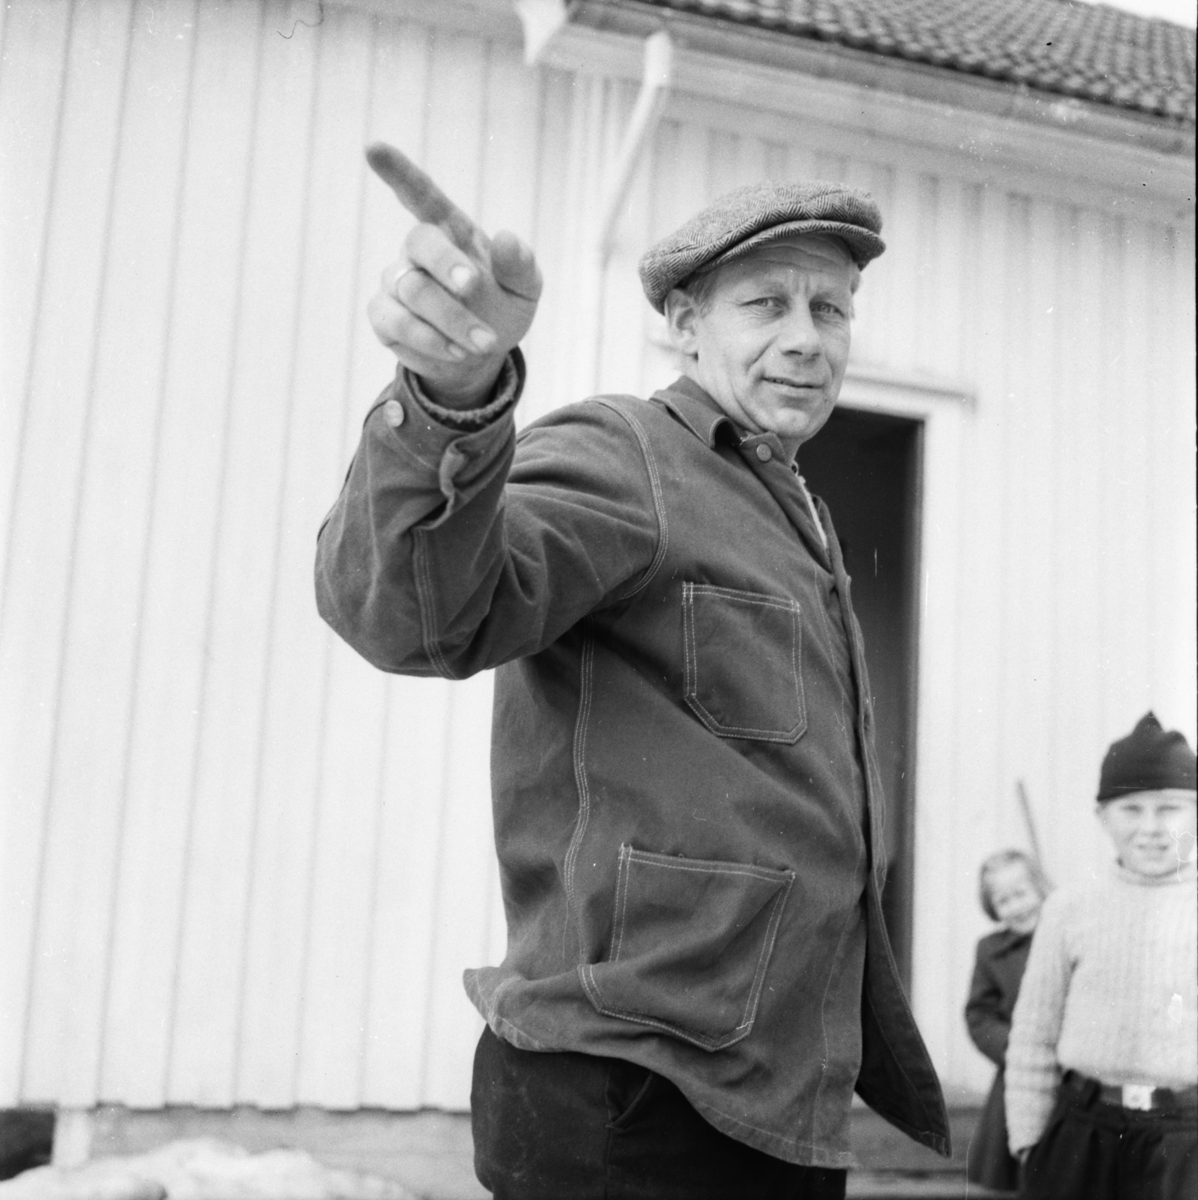 Vardens arkiv. "For eller imot fredning i Børsesjødalen"  25.03.1954